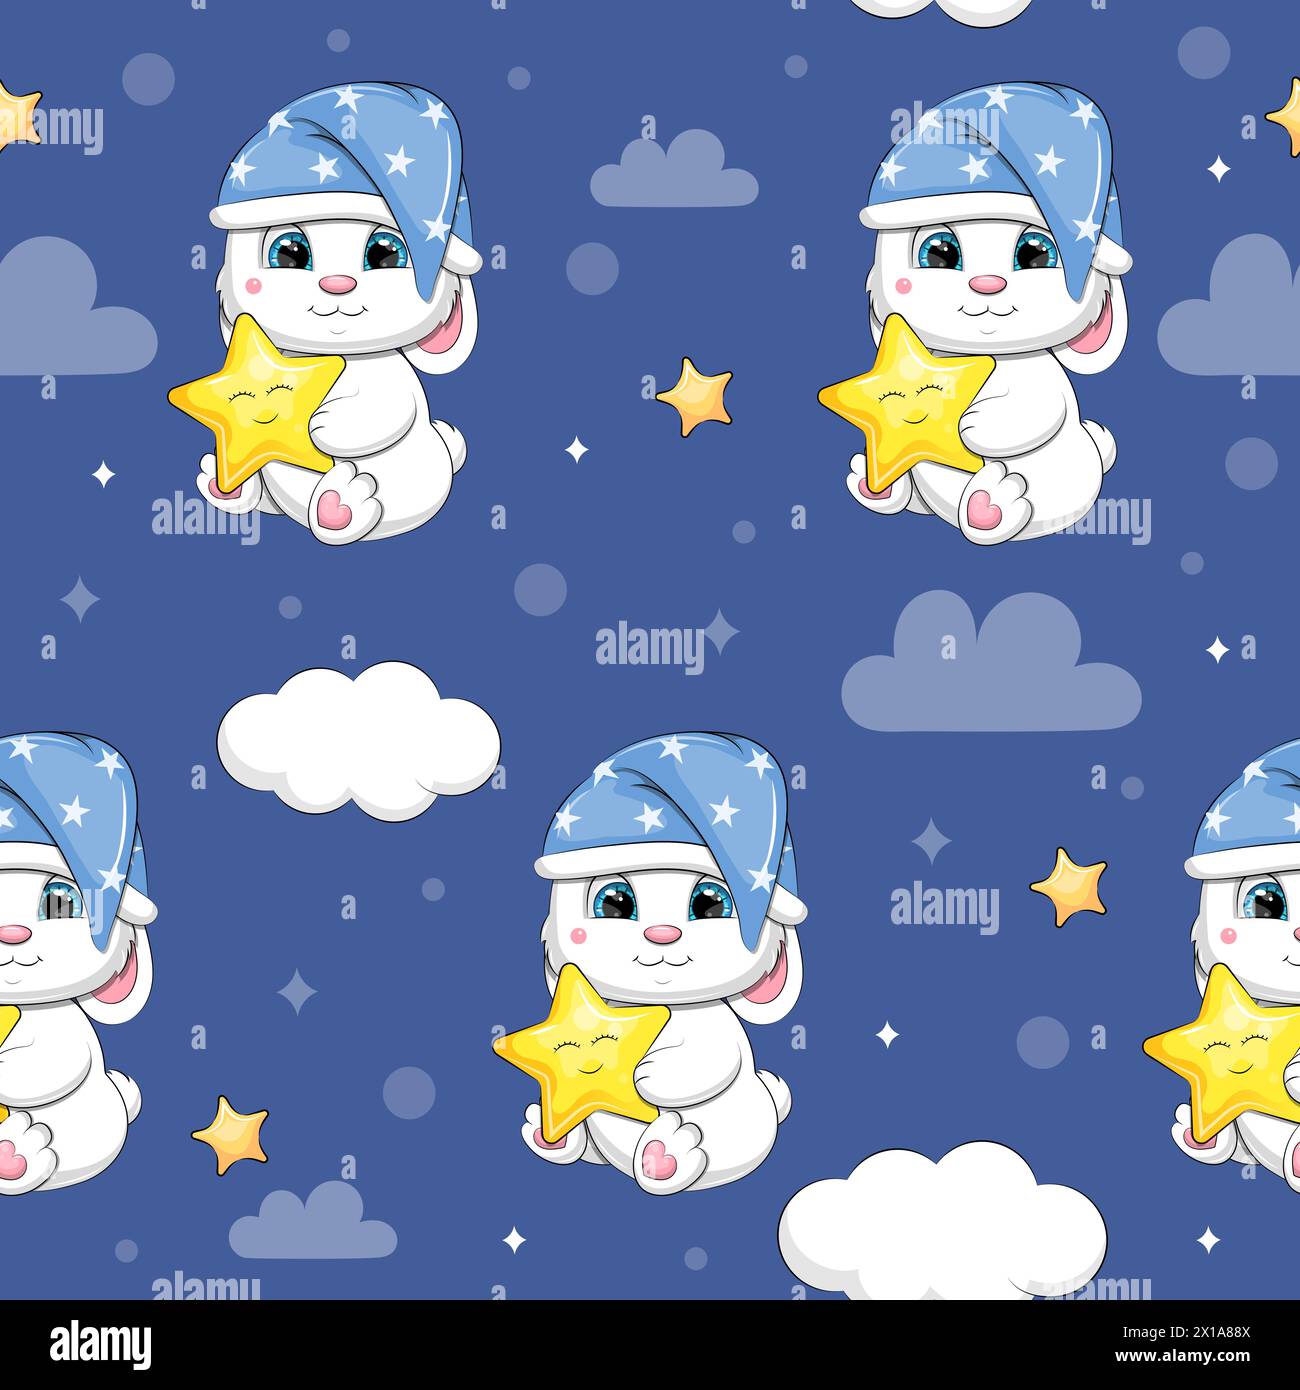 Patrón sin fisuras de conejos blancos lindos de dibujos animados con estrellas amarillas y nubes. Ilustración vectorial de noche de animales sobre fondo azul oscuro con estrellas. Ilustración del Vector